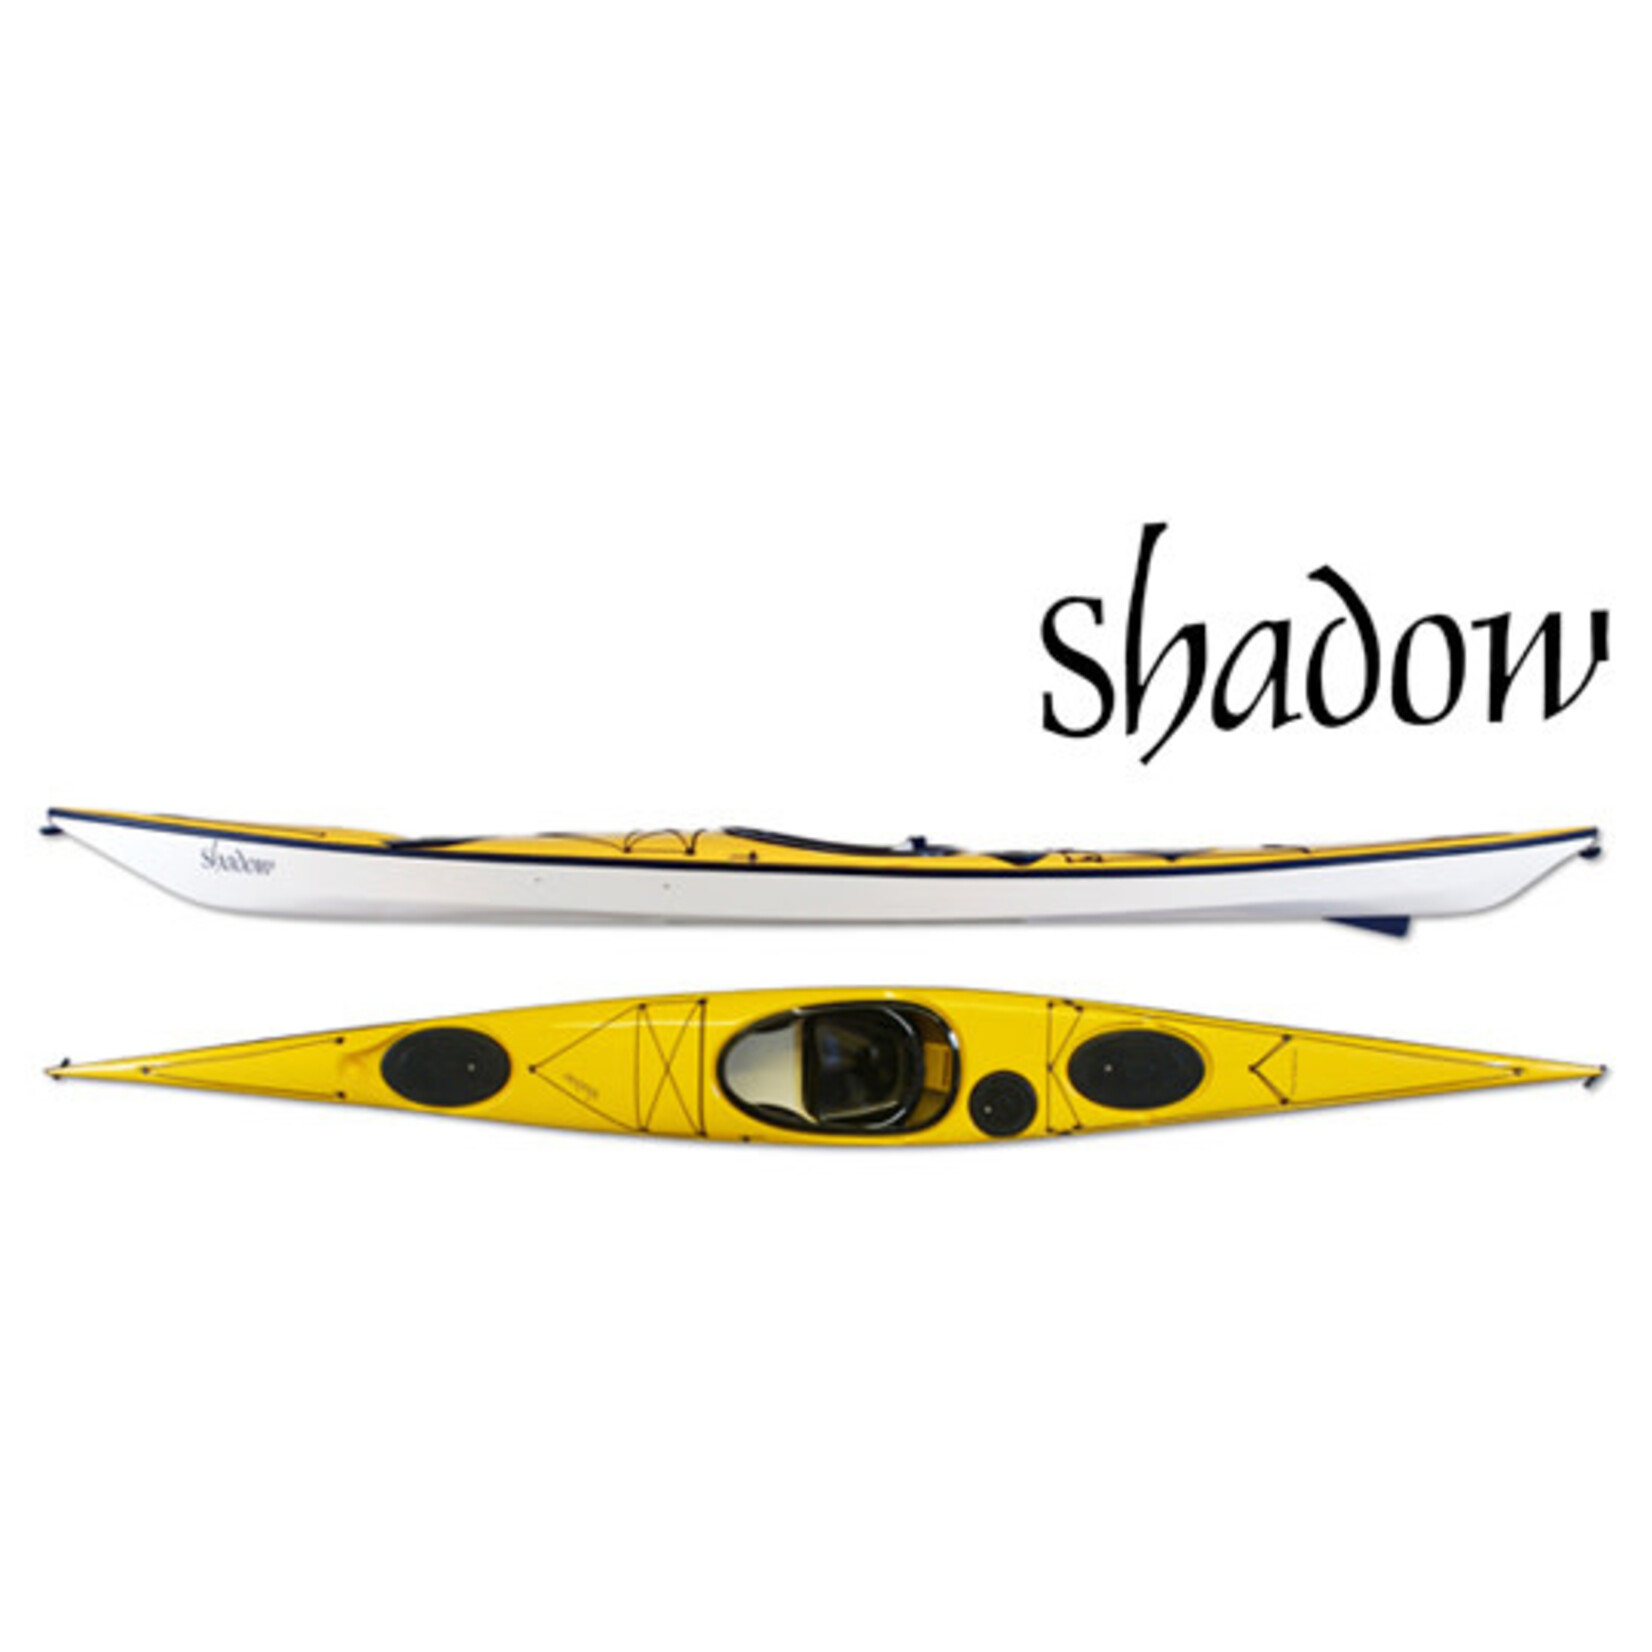 Seaward Kayak de mer Shadow